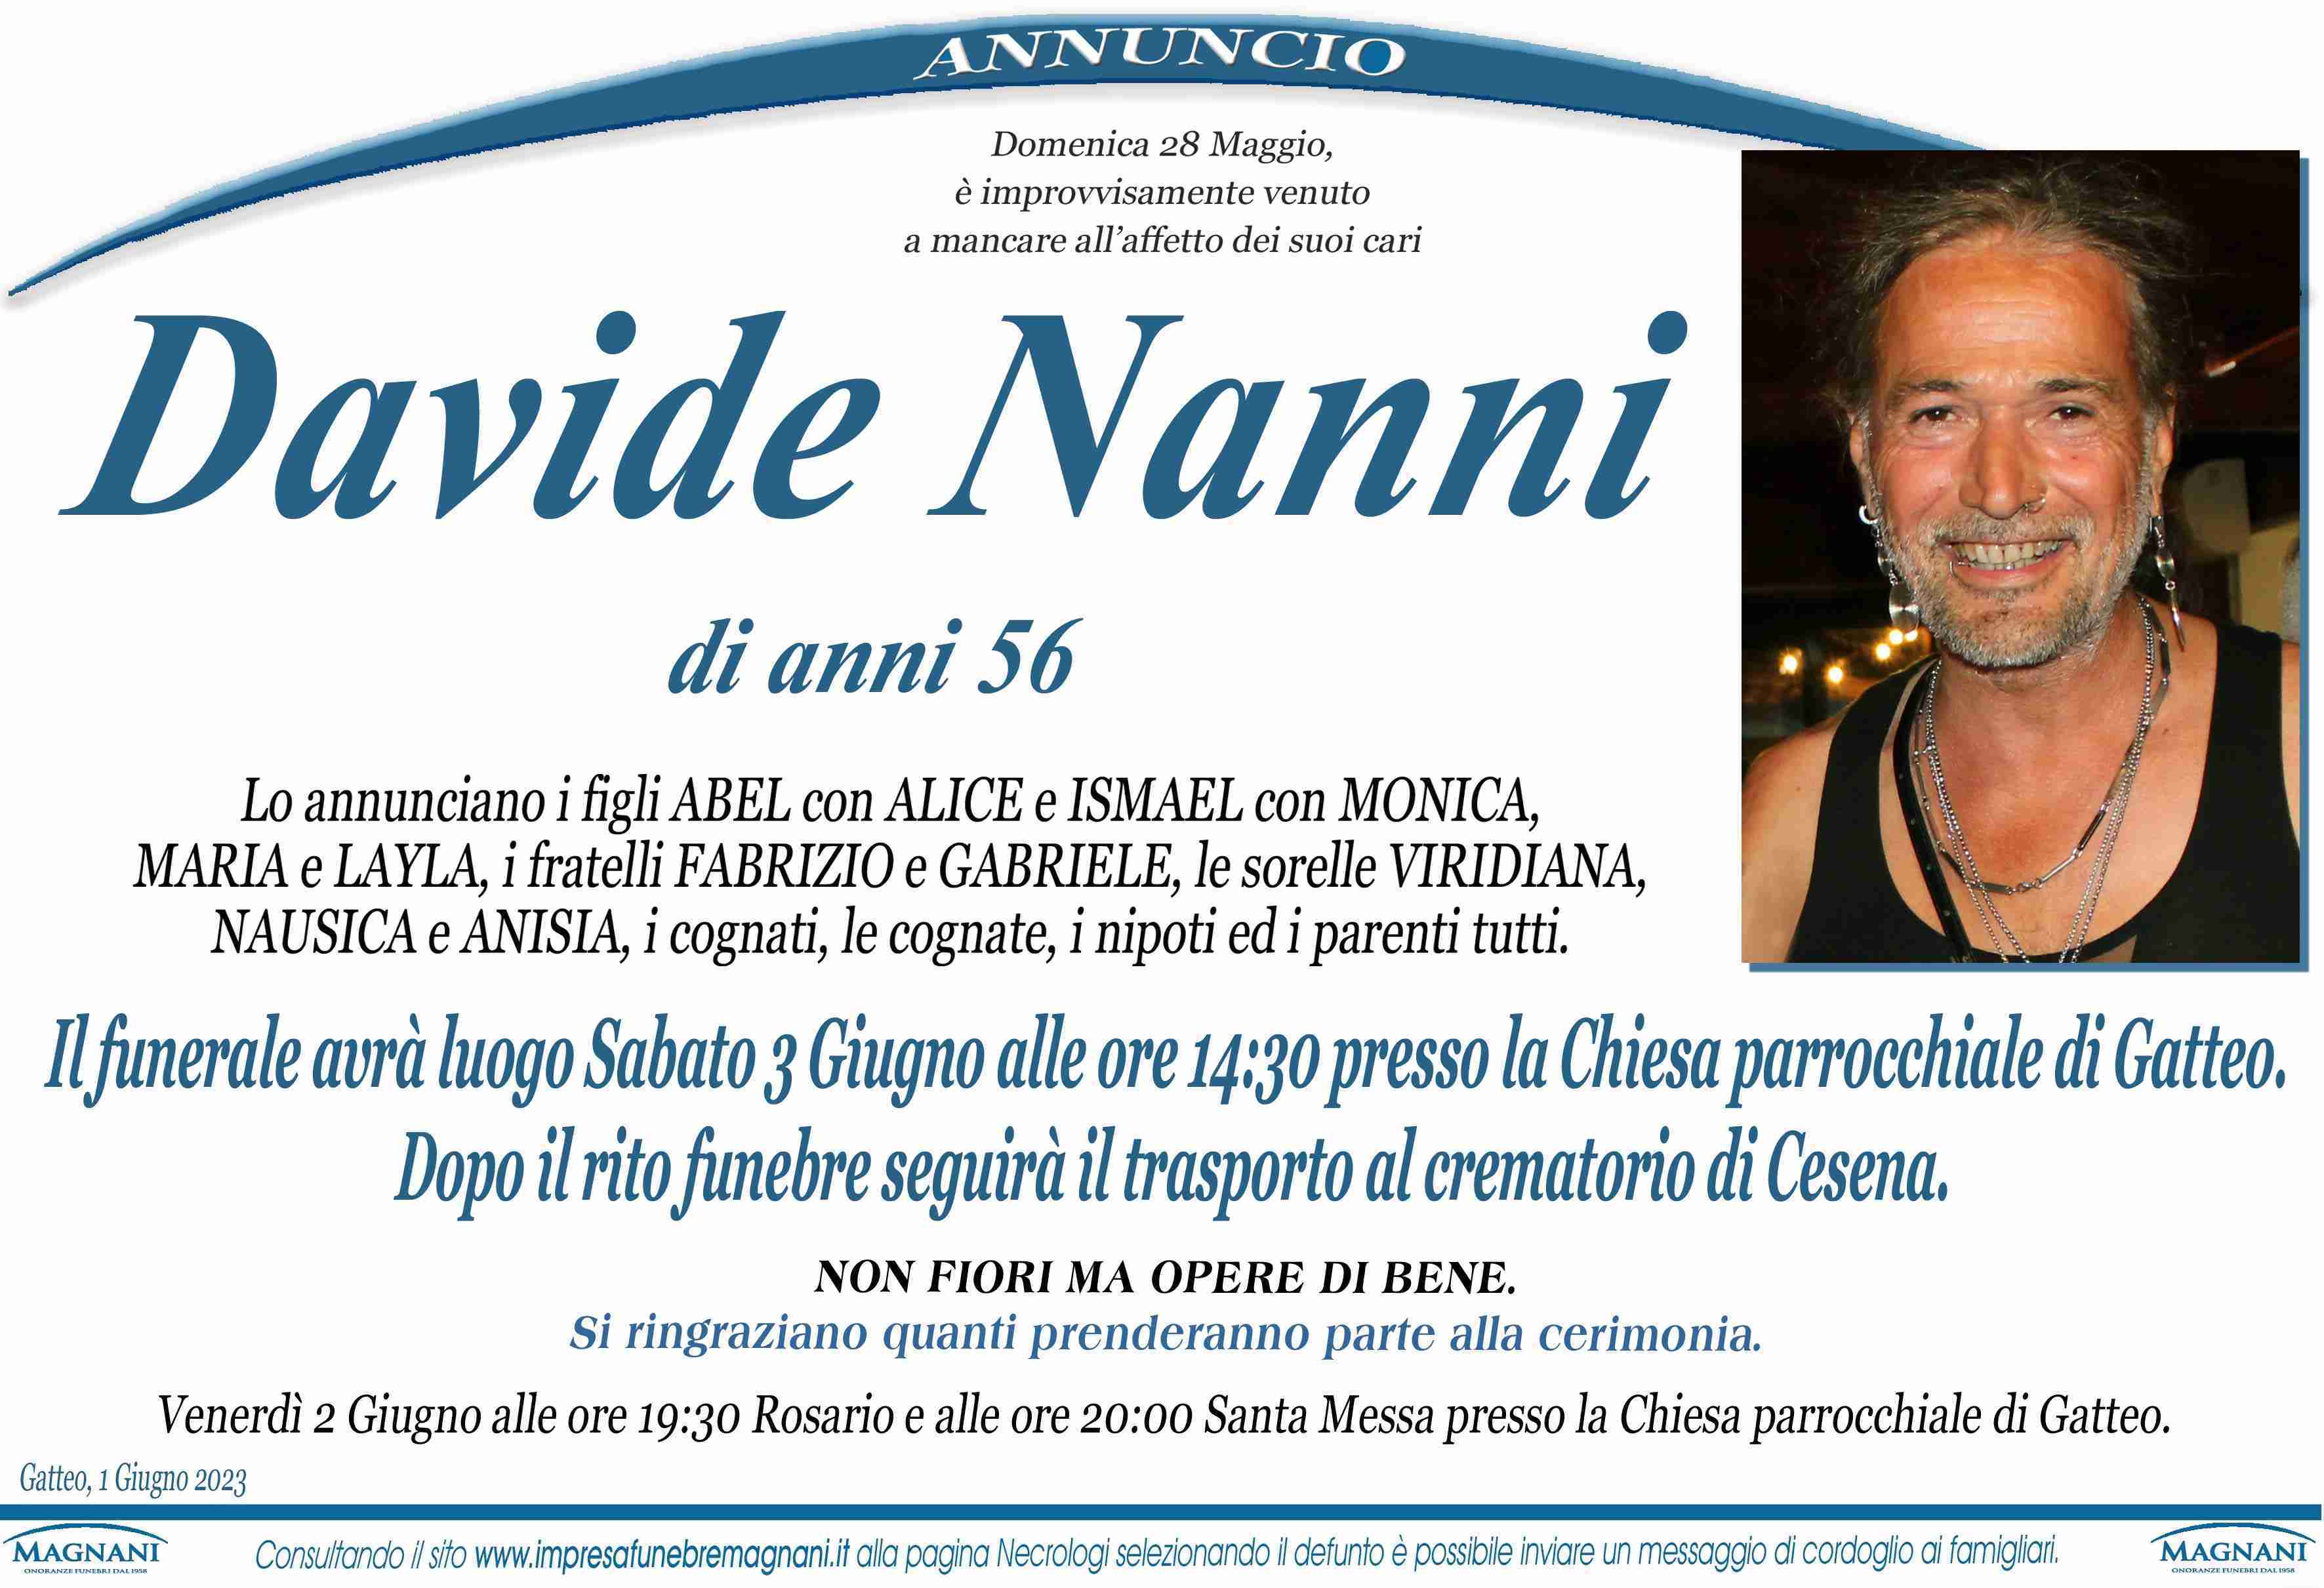 Davide Nanni